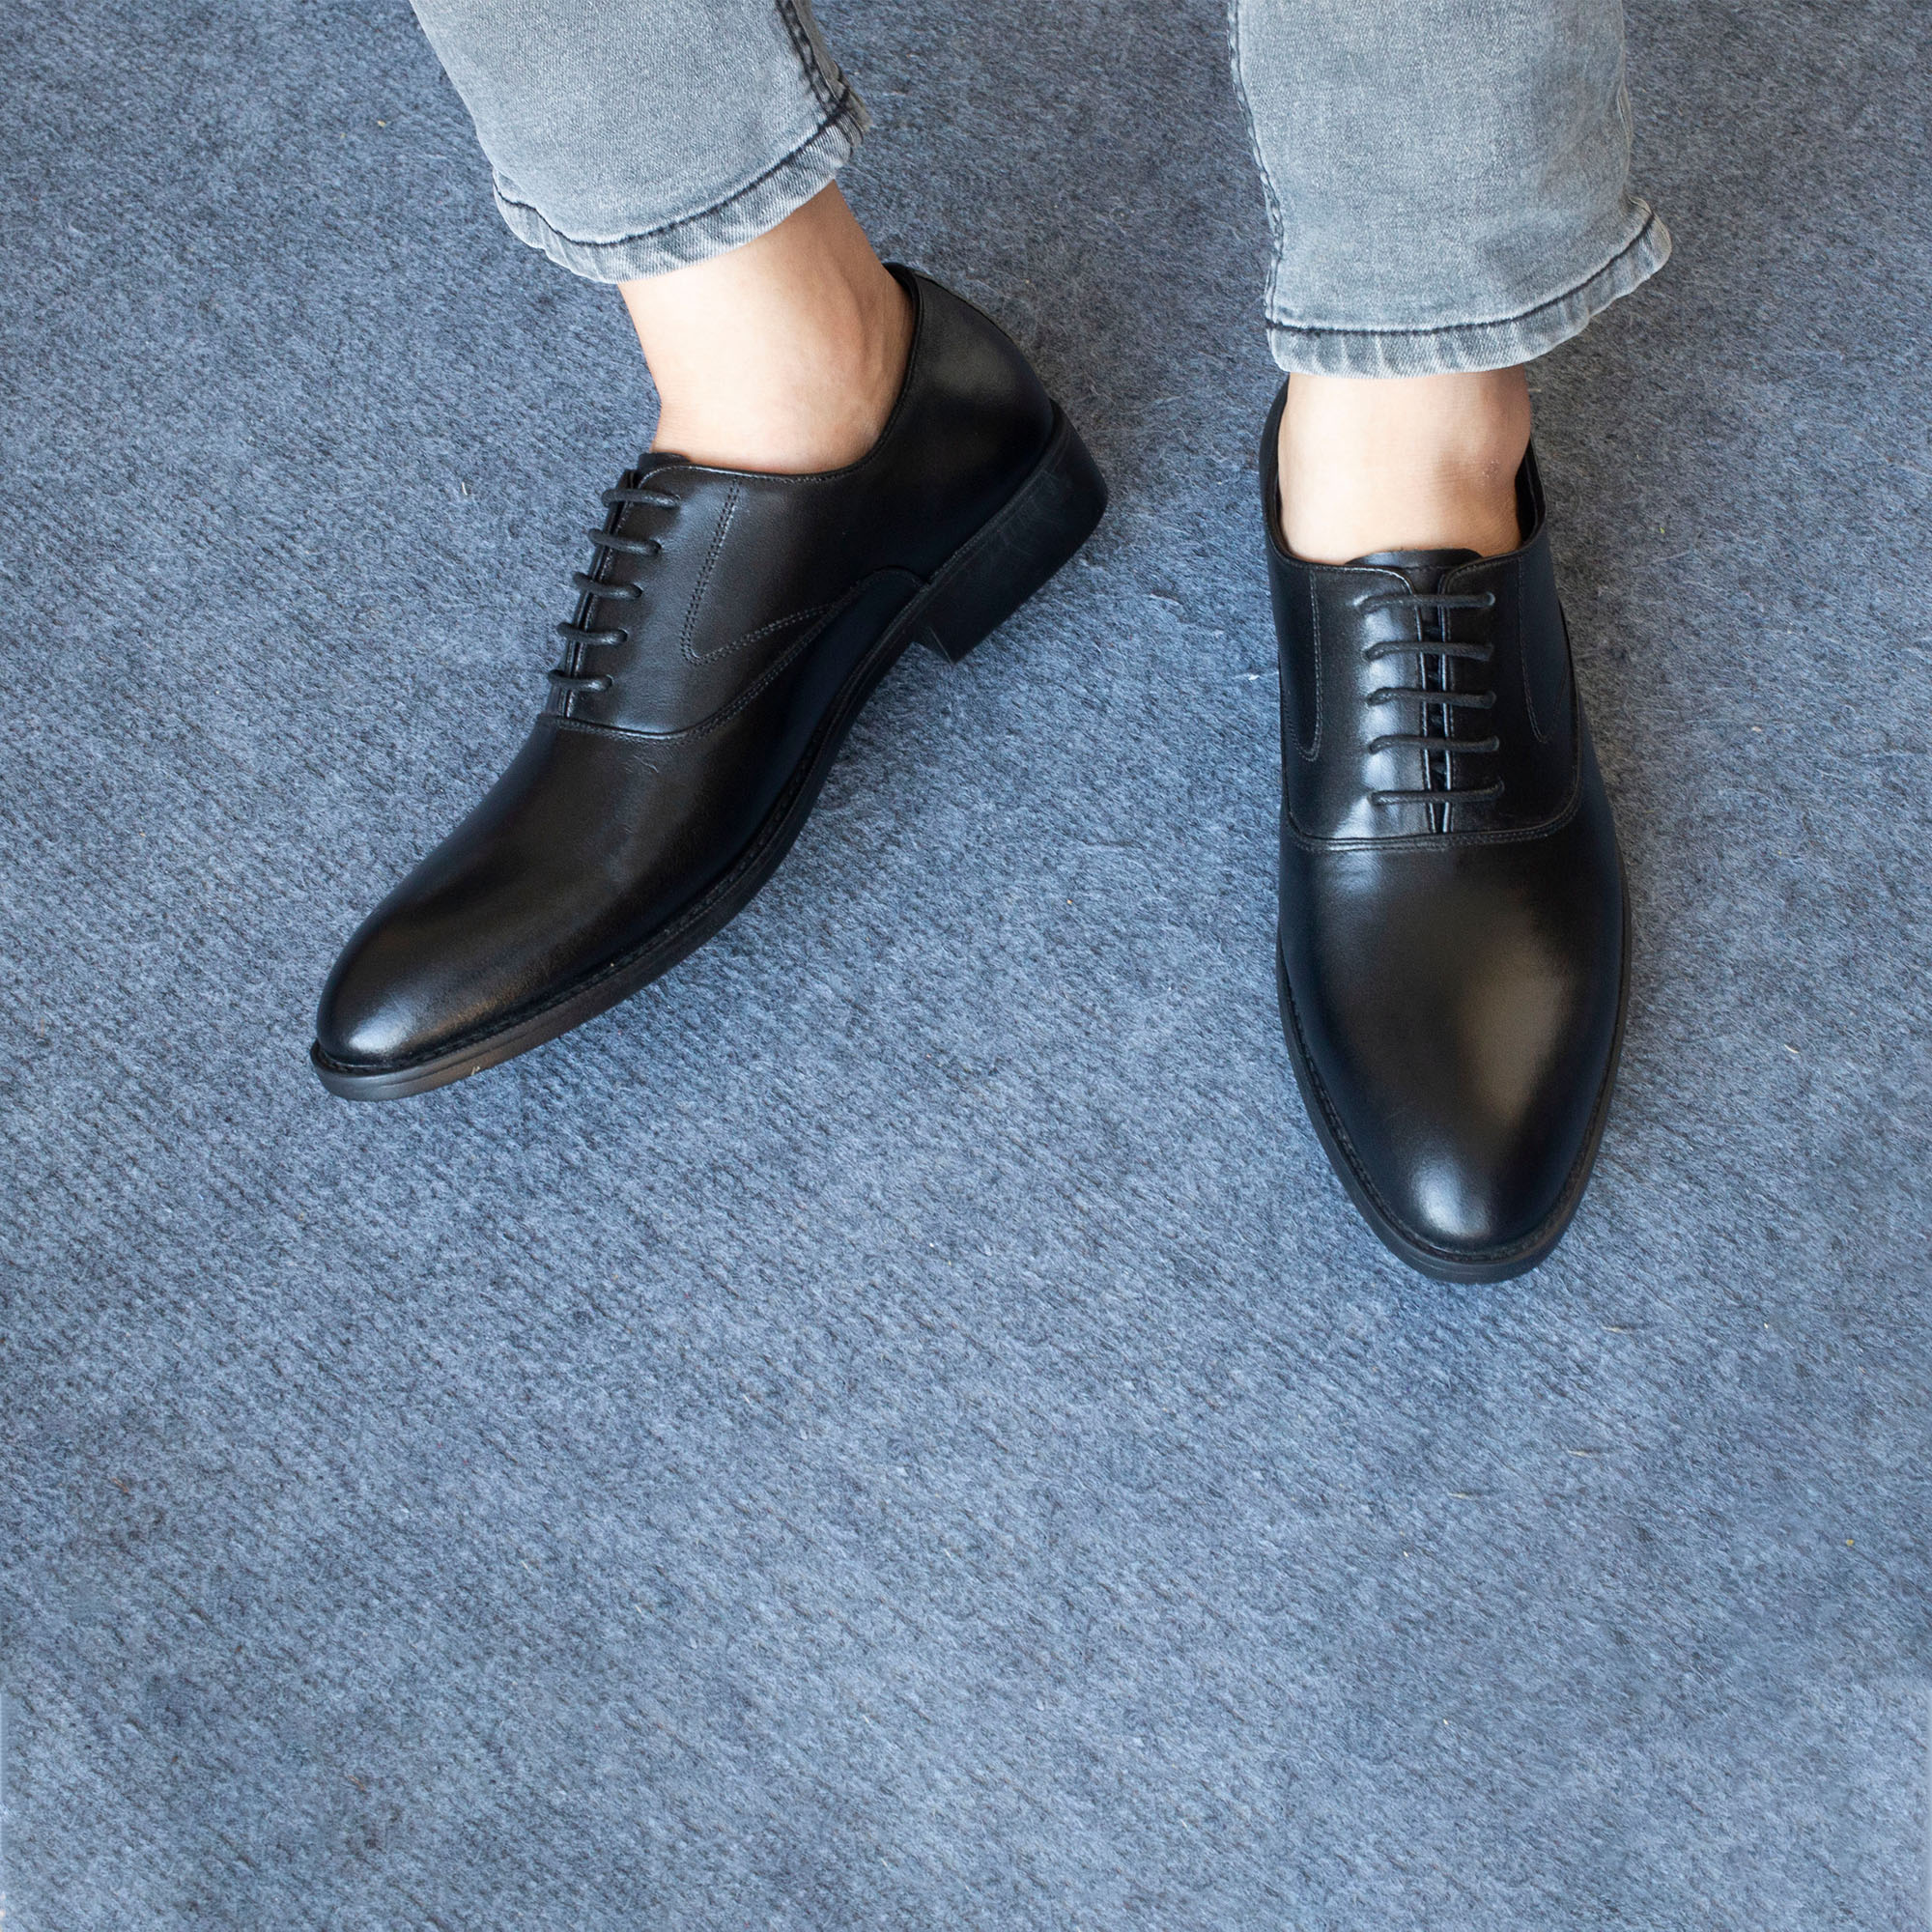 Hình ảnh Giày da nam, giày oxford công sở Bụi Leather G104 - Da bò Nappa cao cấp - Bảo hành 12 tháng